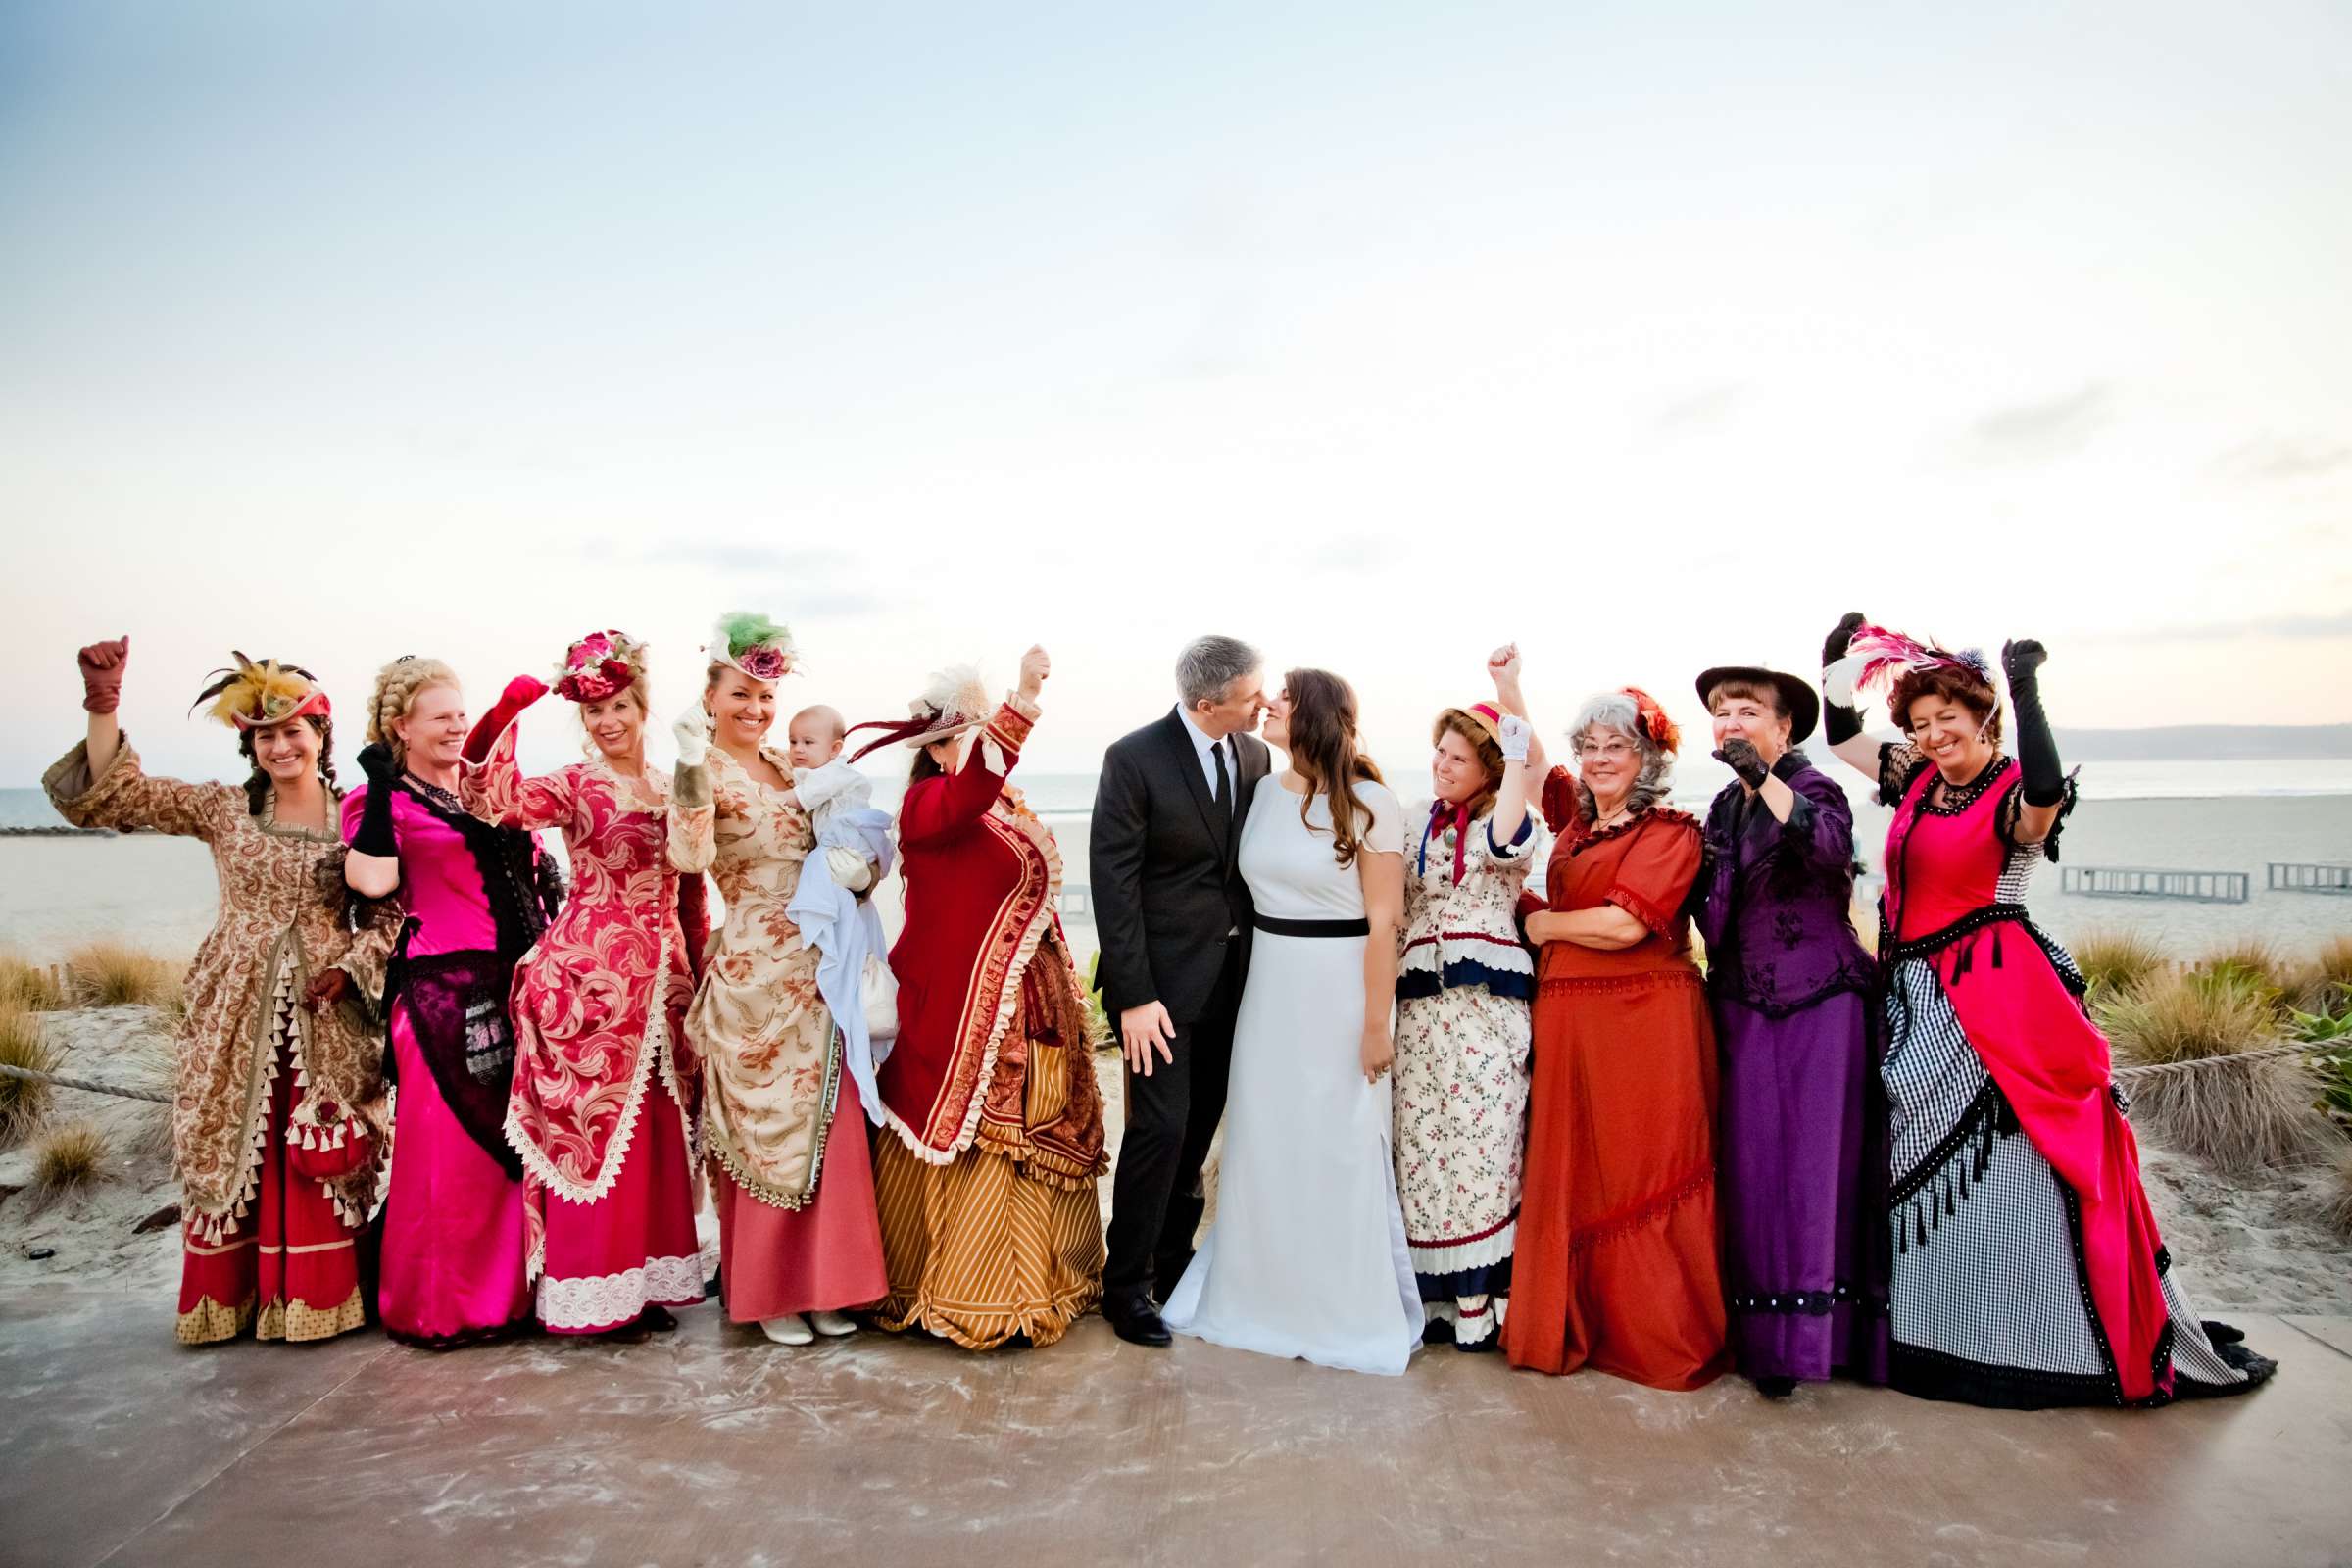 Hotel Del Coronado Wedding, Melis and Marc Wedding Photo #3 by True Photography